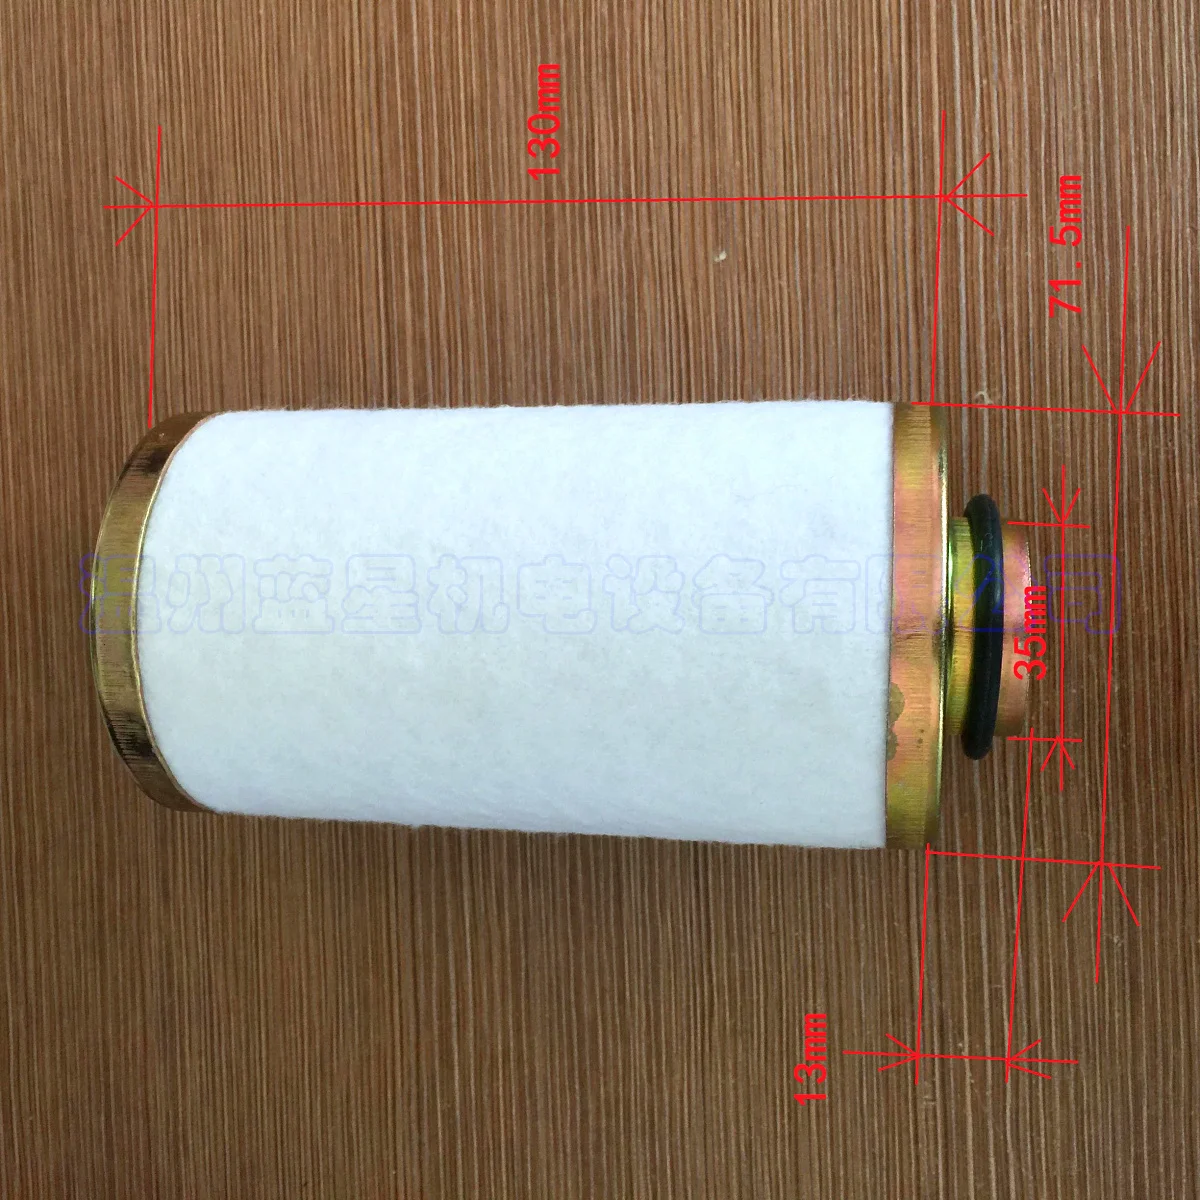 Odvodni filter za vrtljive krilne vakuumske črpalke XD-020, z O vrsta obroča (velja za vse kartice XD-020)